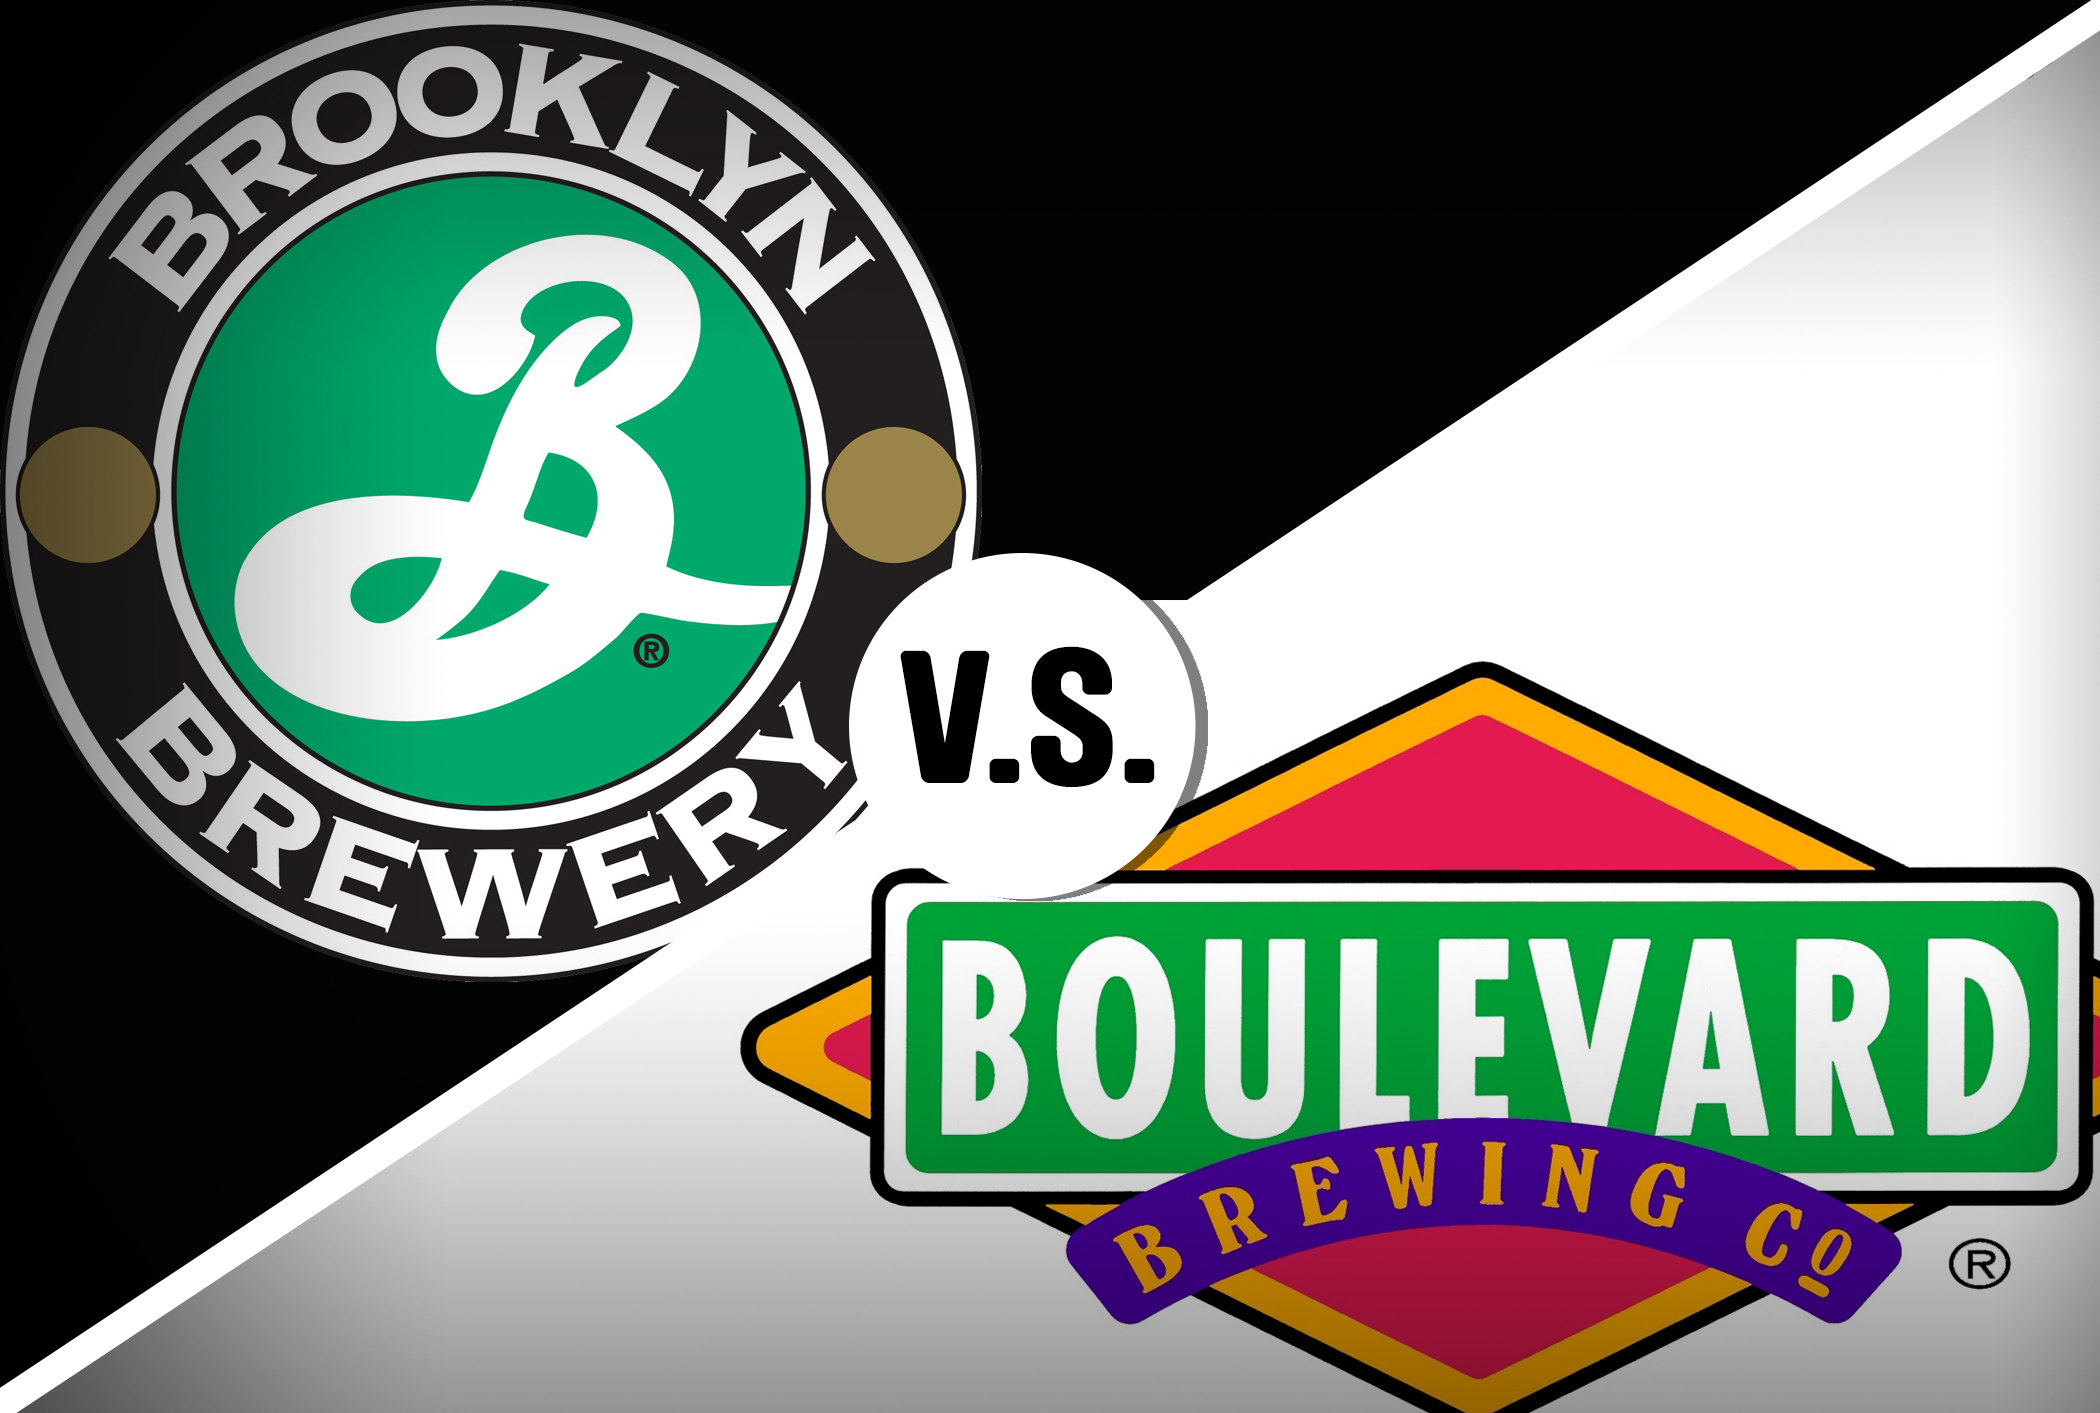 Brooklyn Brewery v. Boulevard Brewery